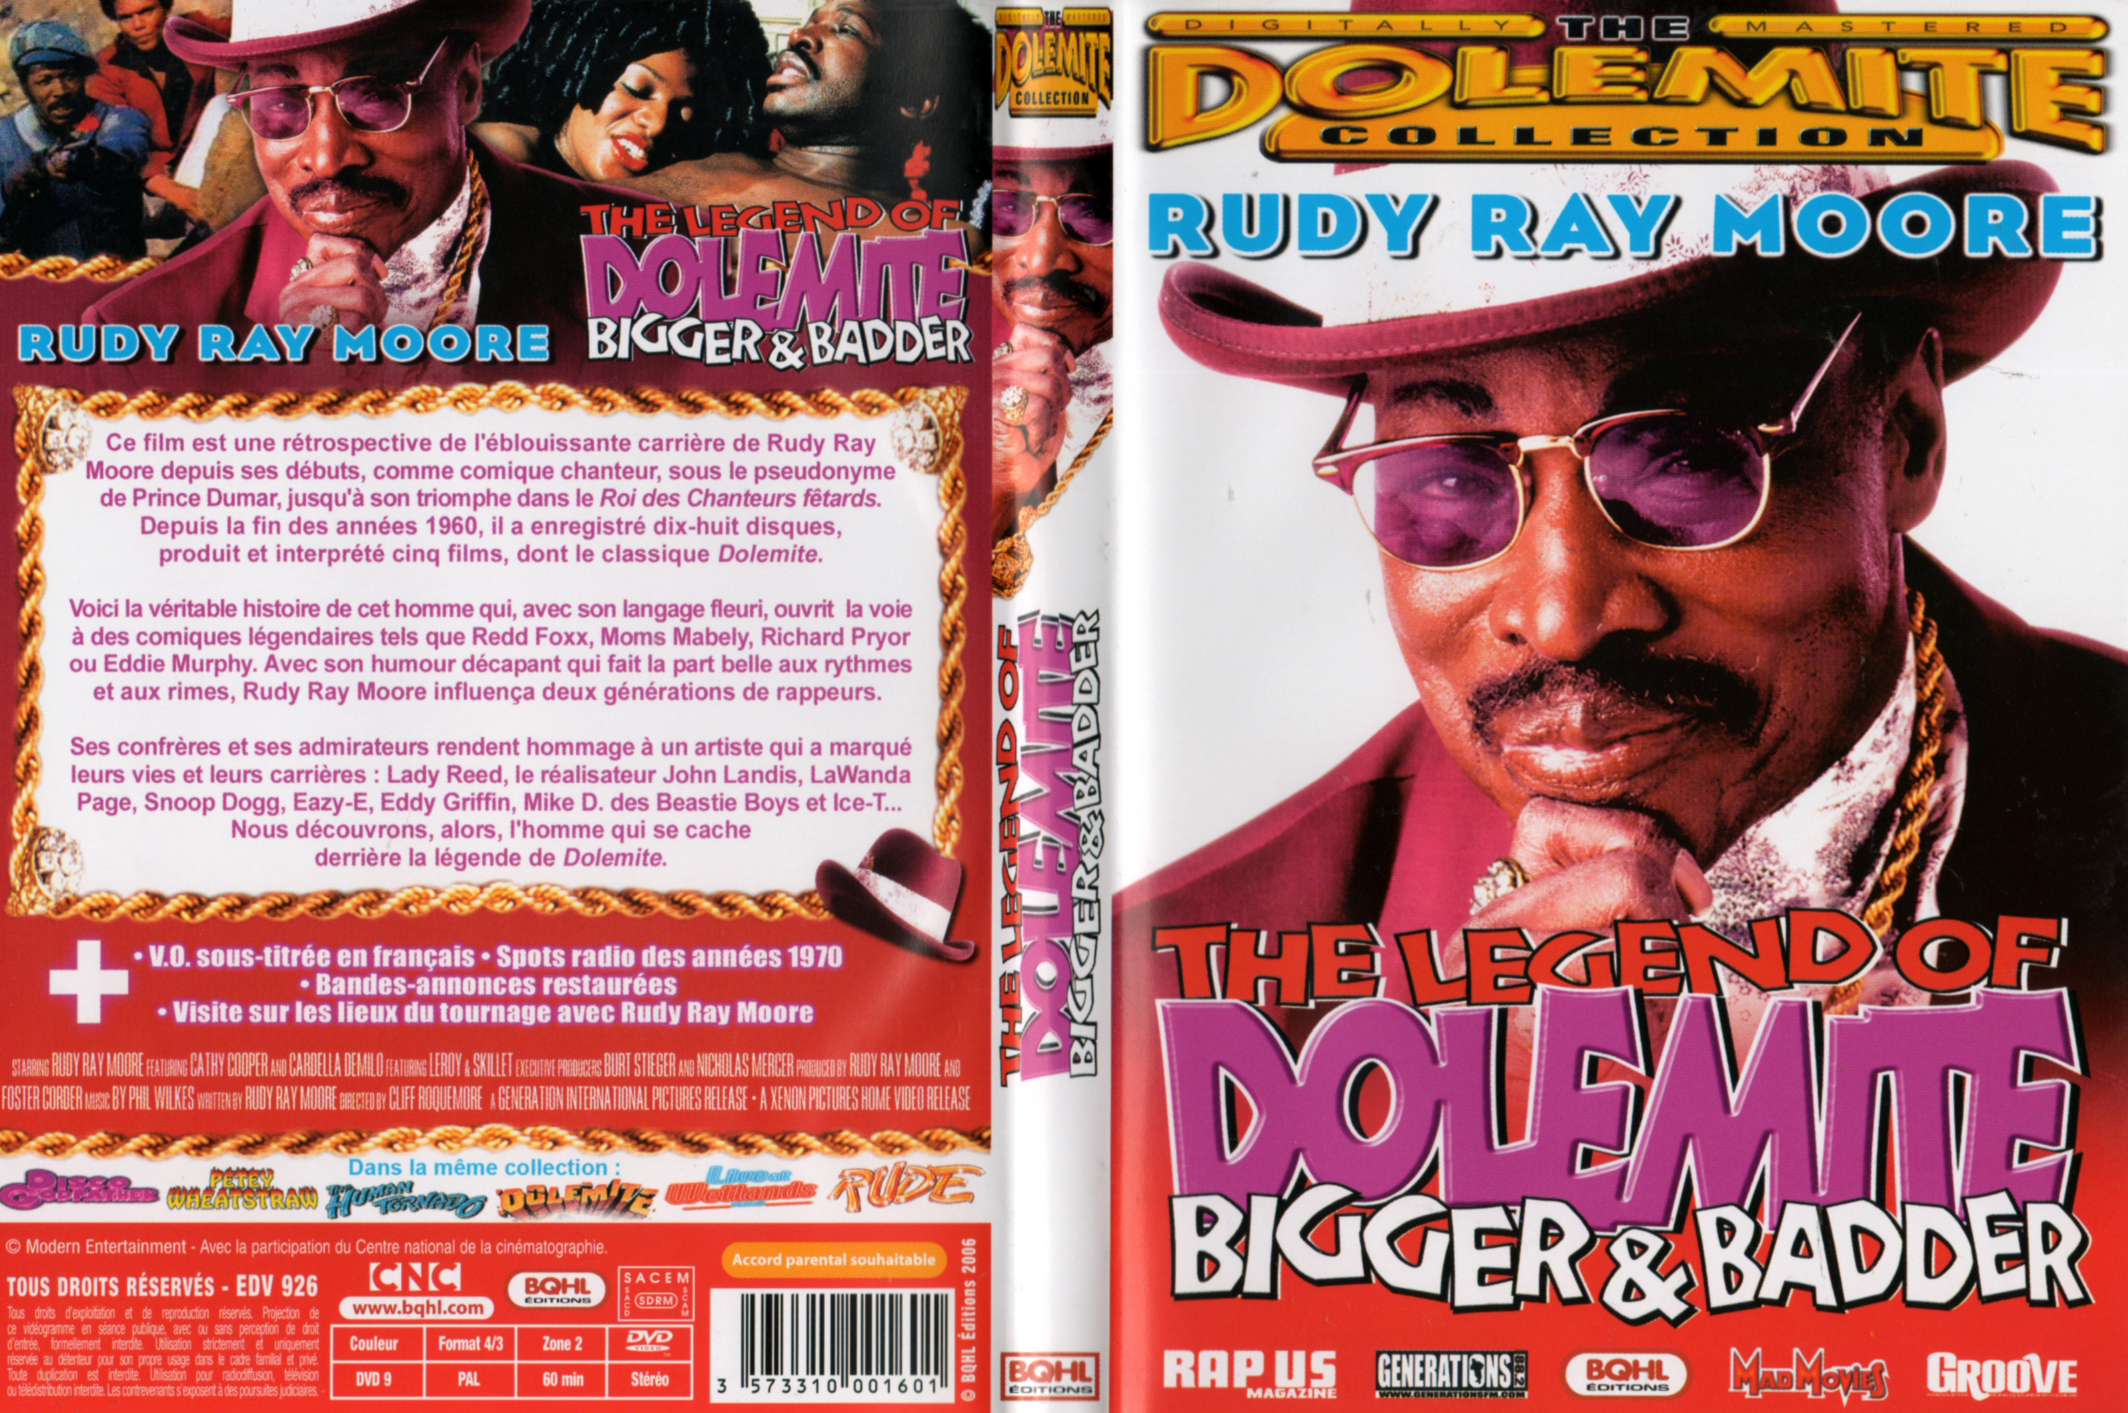 Jaquette DVD The legend of Dolemite Bigger & Badder